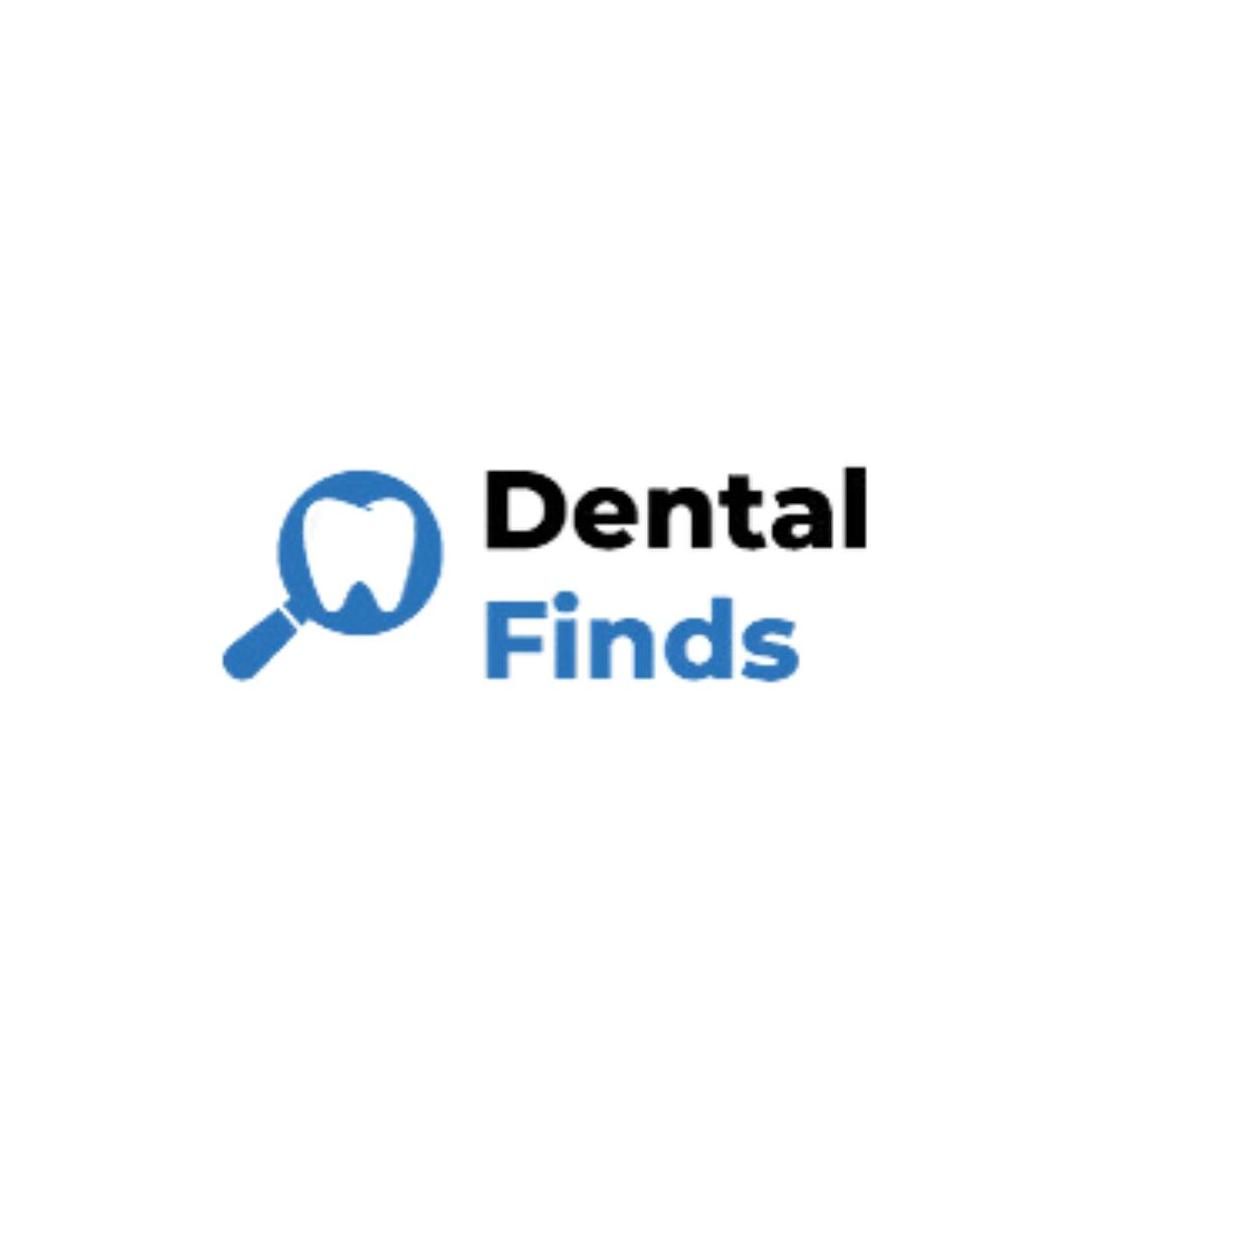 Dental Finds